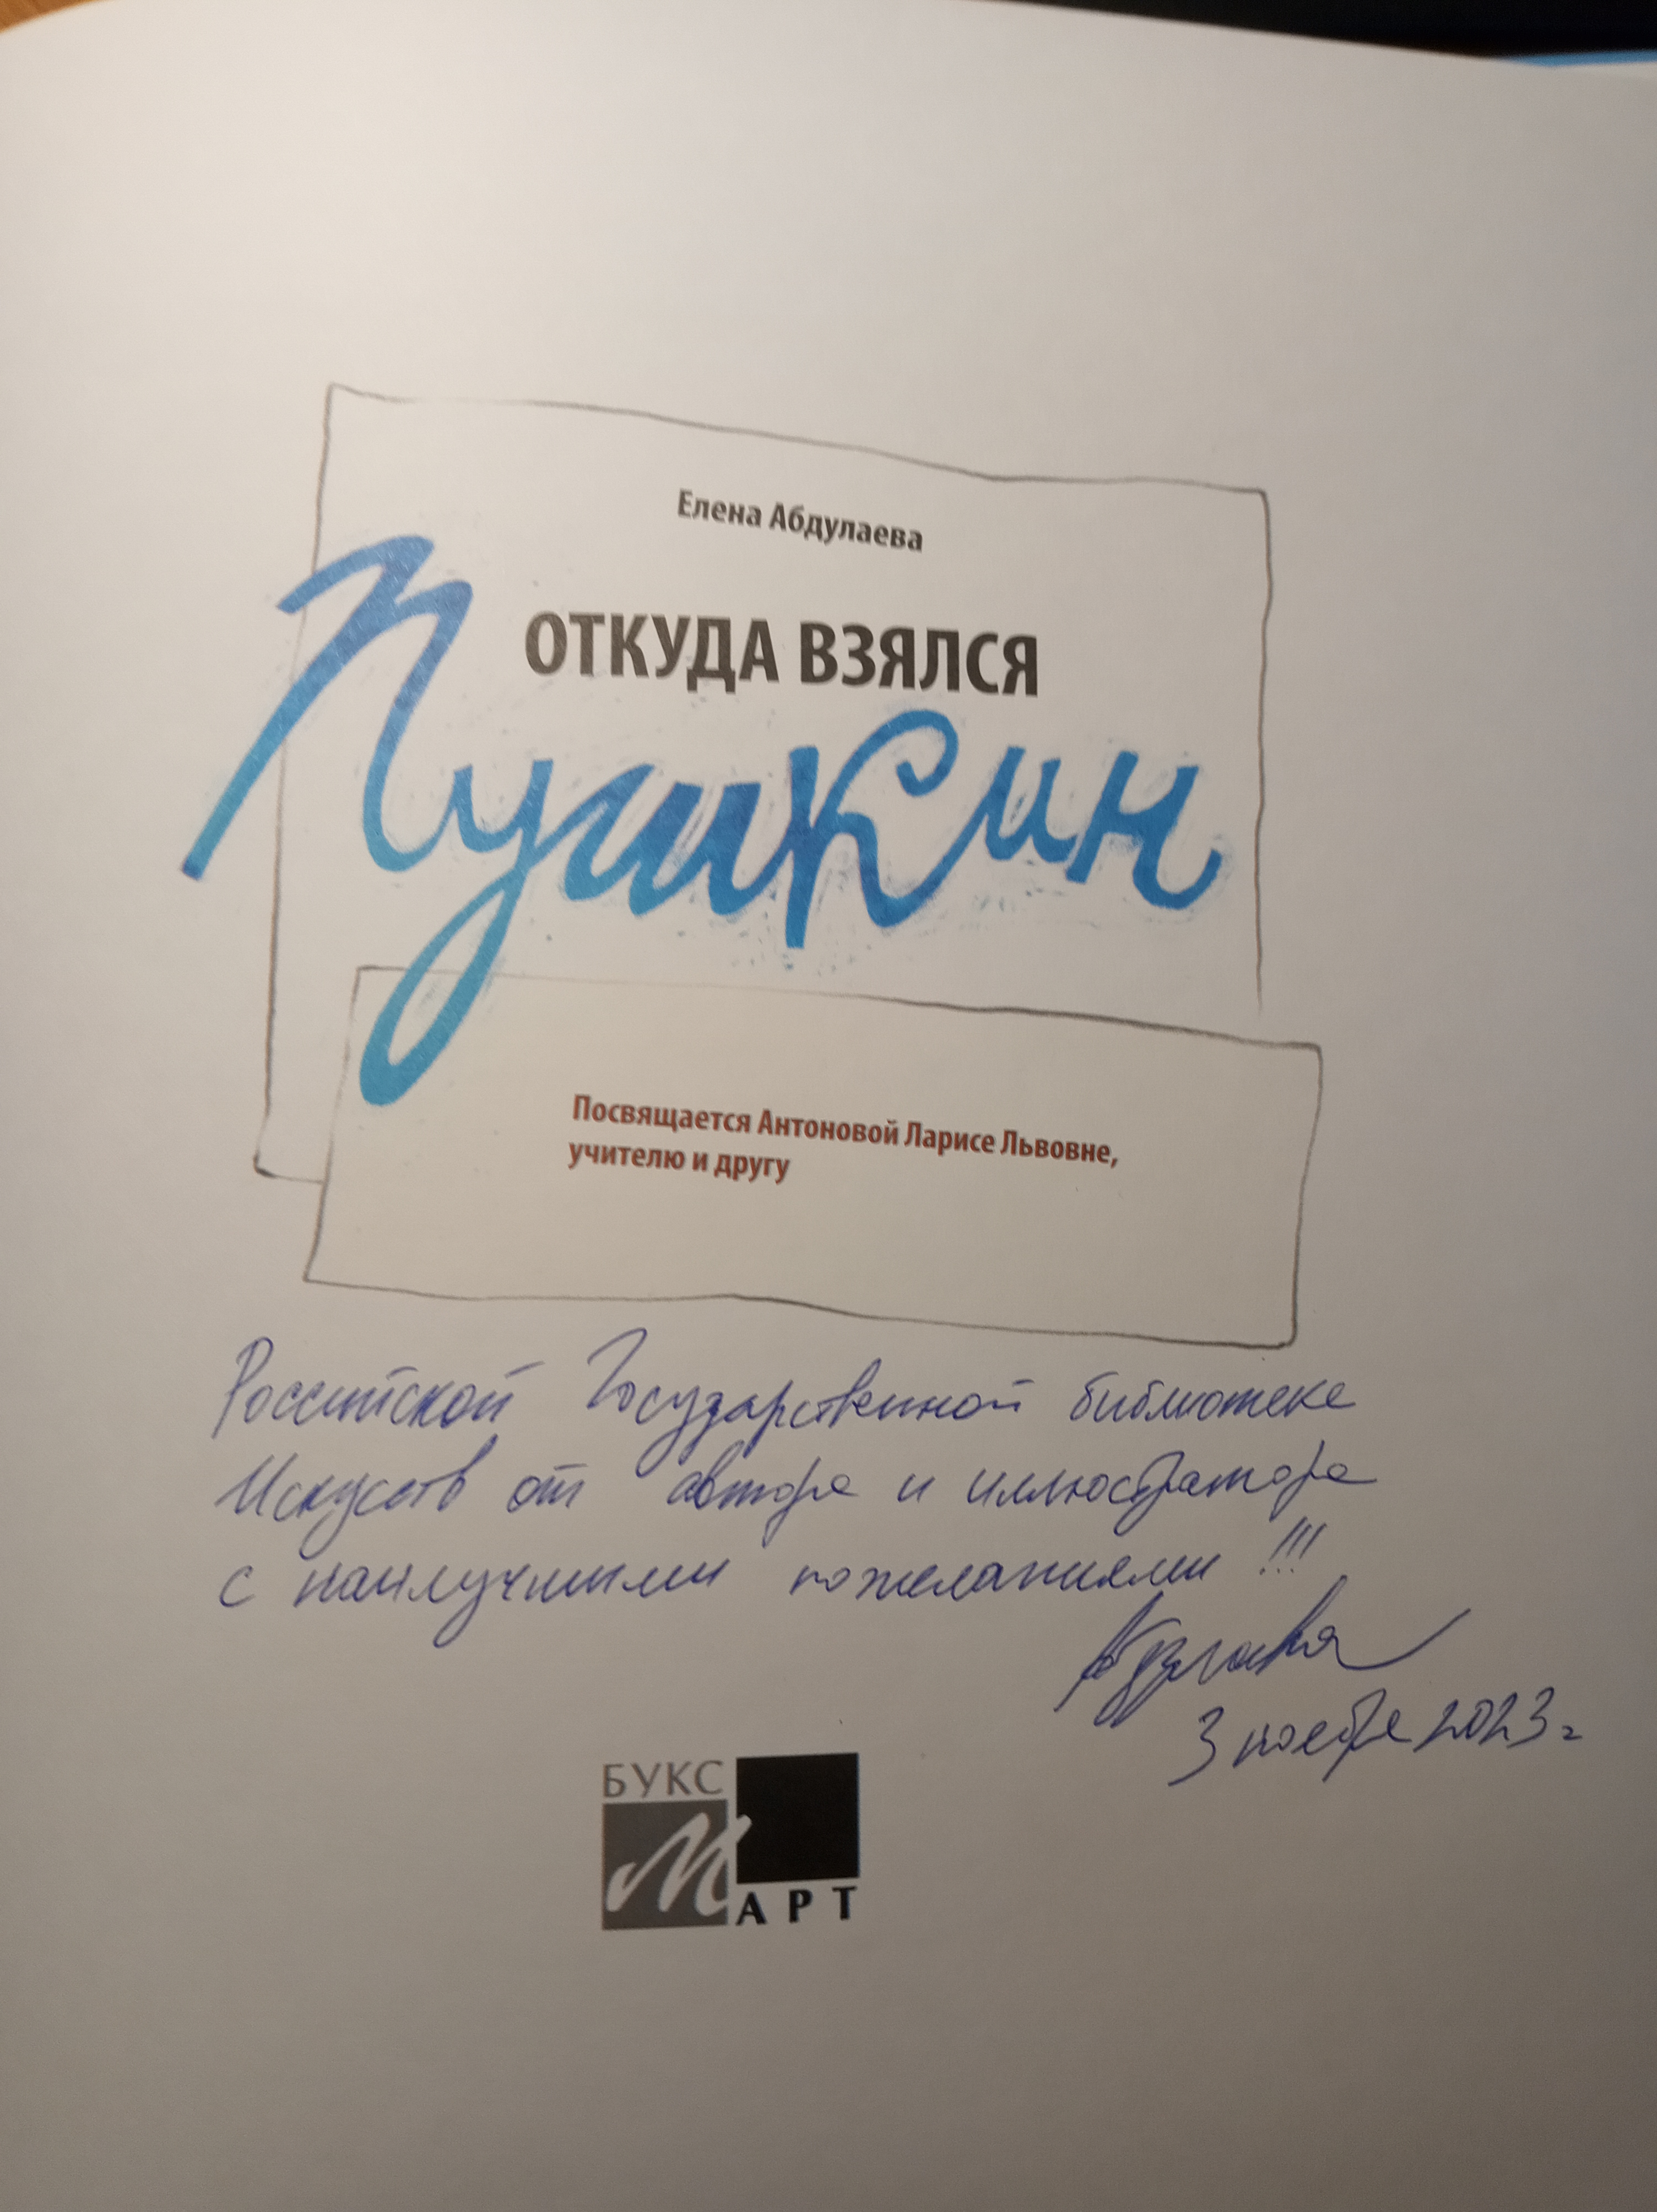 В дар РГБИ – книга Елены Абдулаевой с автографом автора